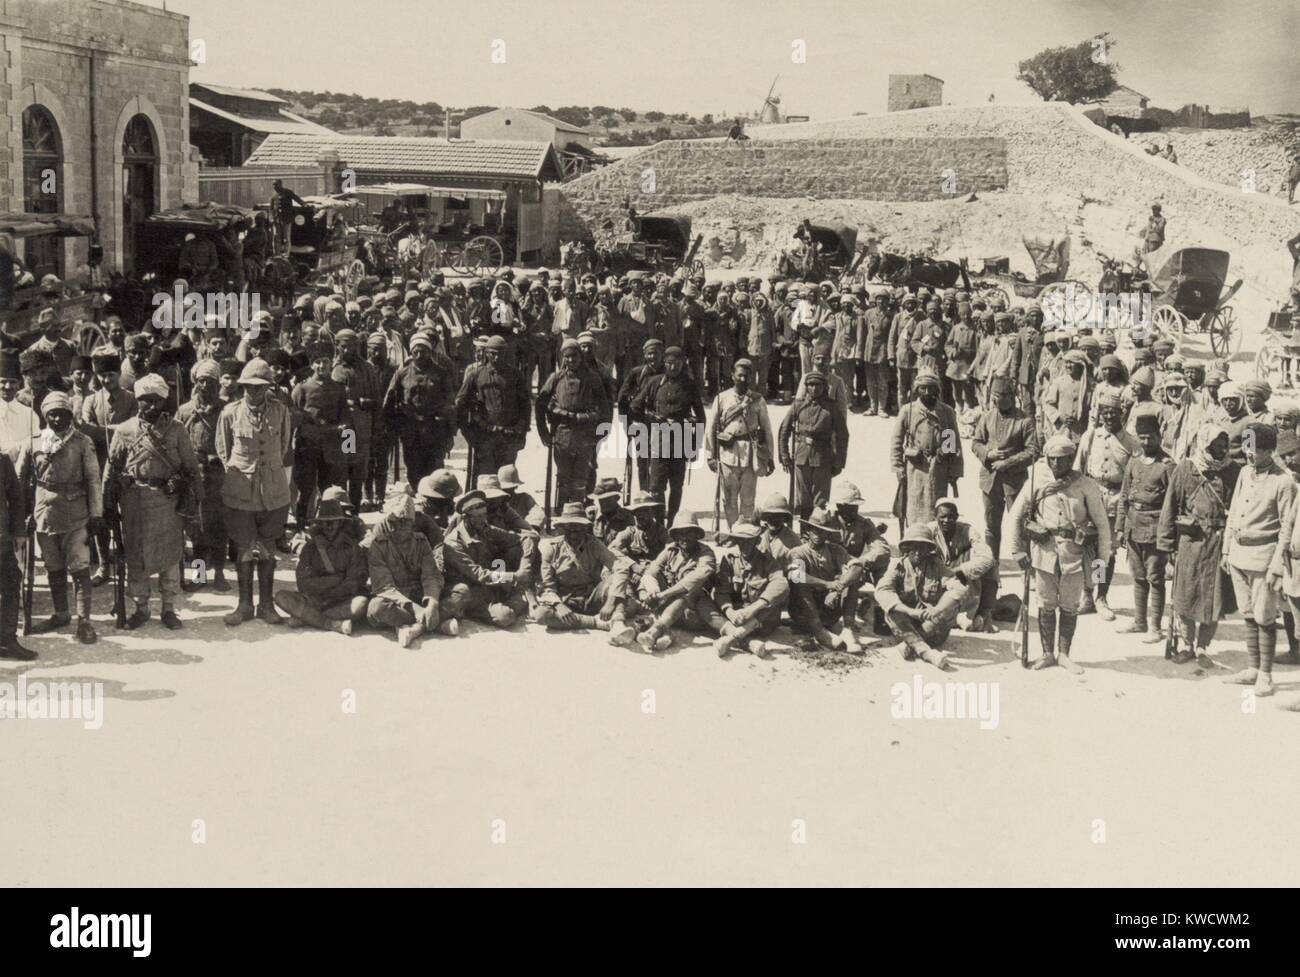 Assis à Schellal australienne prisonniers en captivité dans la première bataille de Gaza, le 26 mars 1917. Des soldats de la Force expéditionnaire égyptienne sont entourés de leurs ravisseurs ottoman turc victorieux. (BSLOC 2017 1 160) Banque D'Images